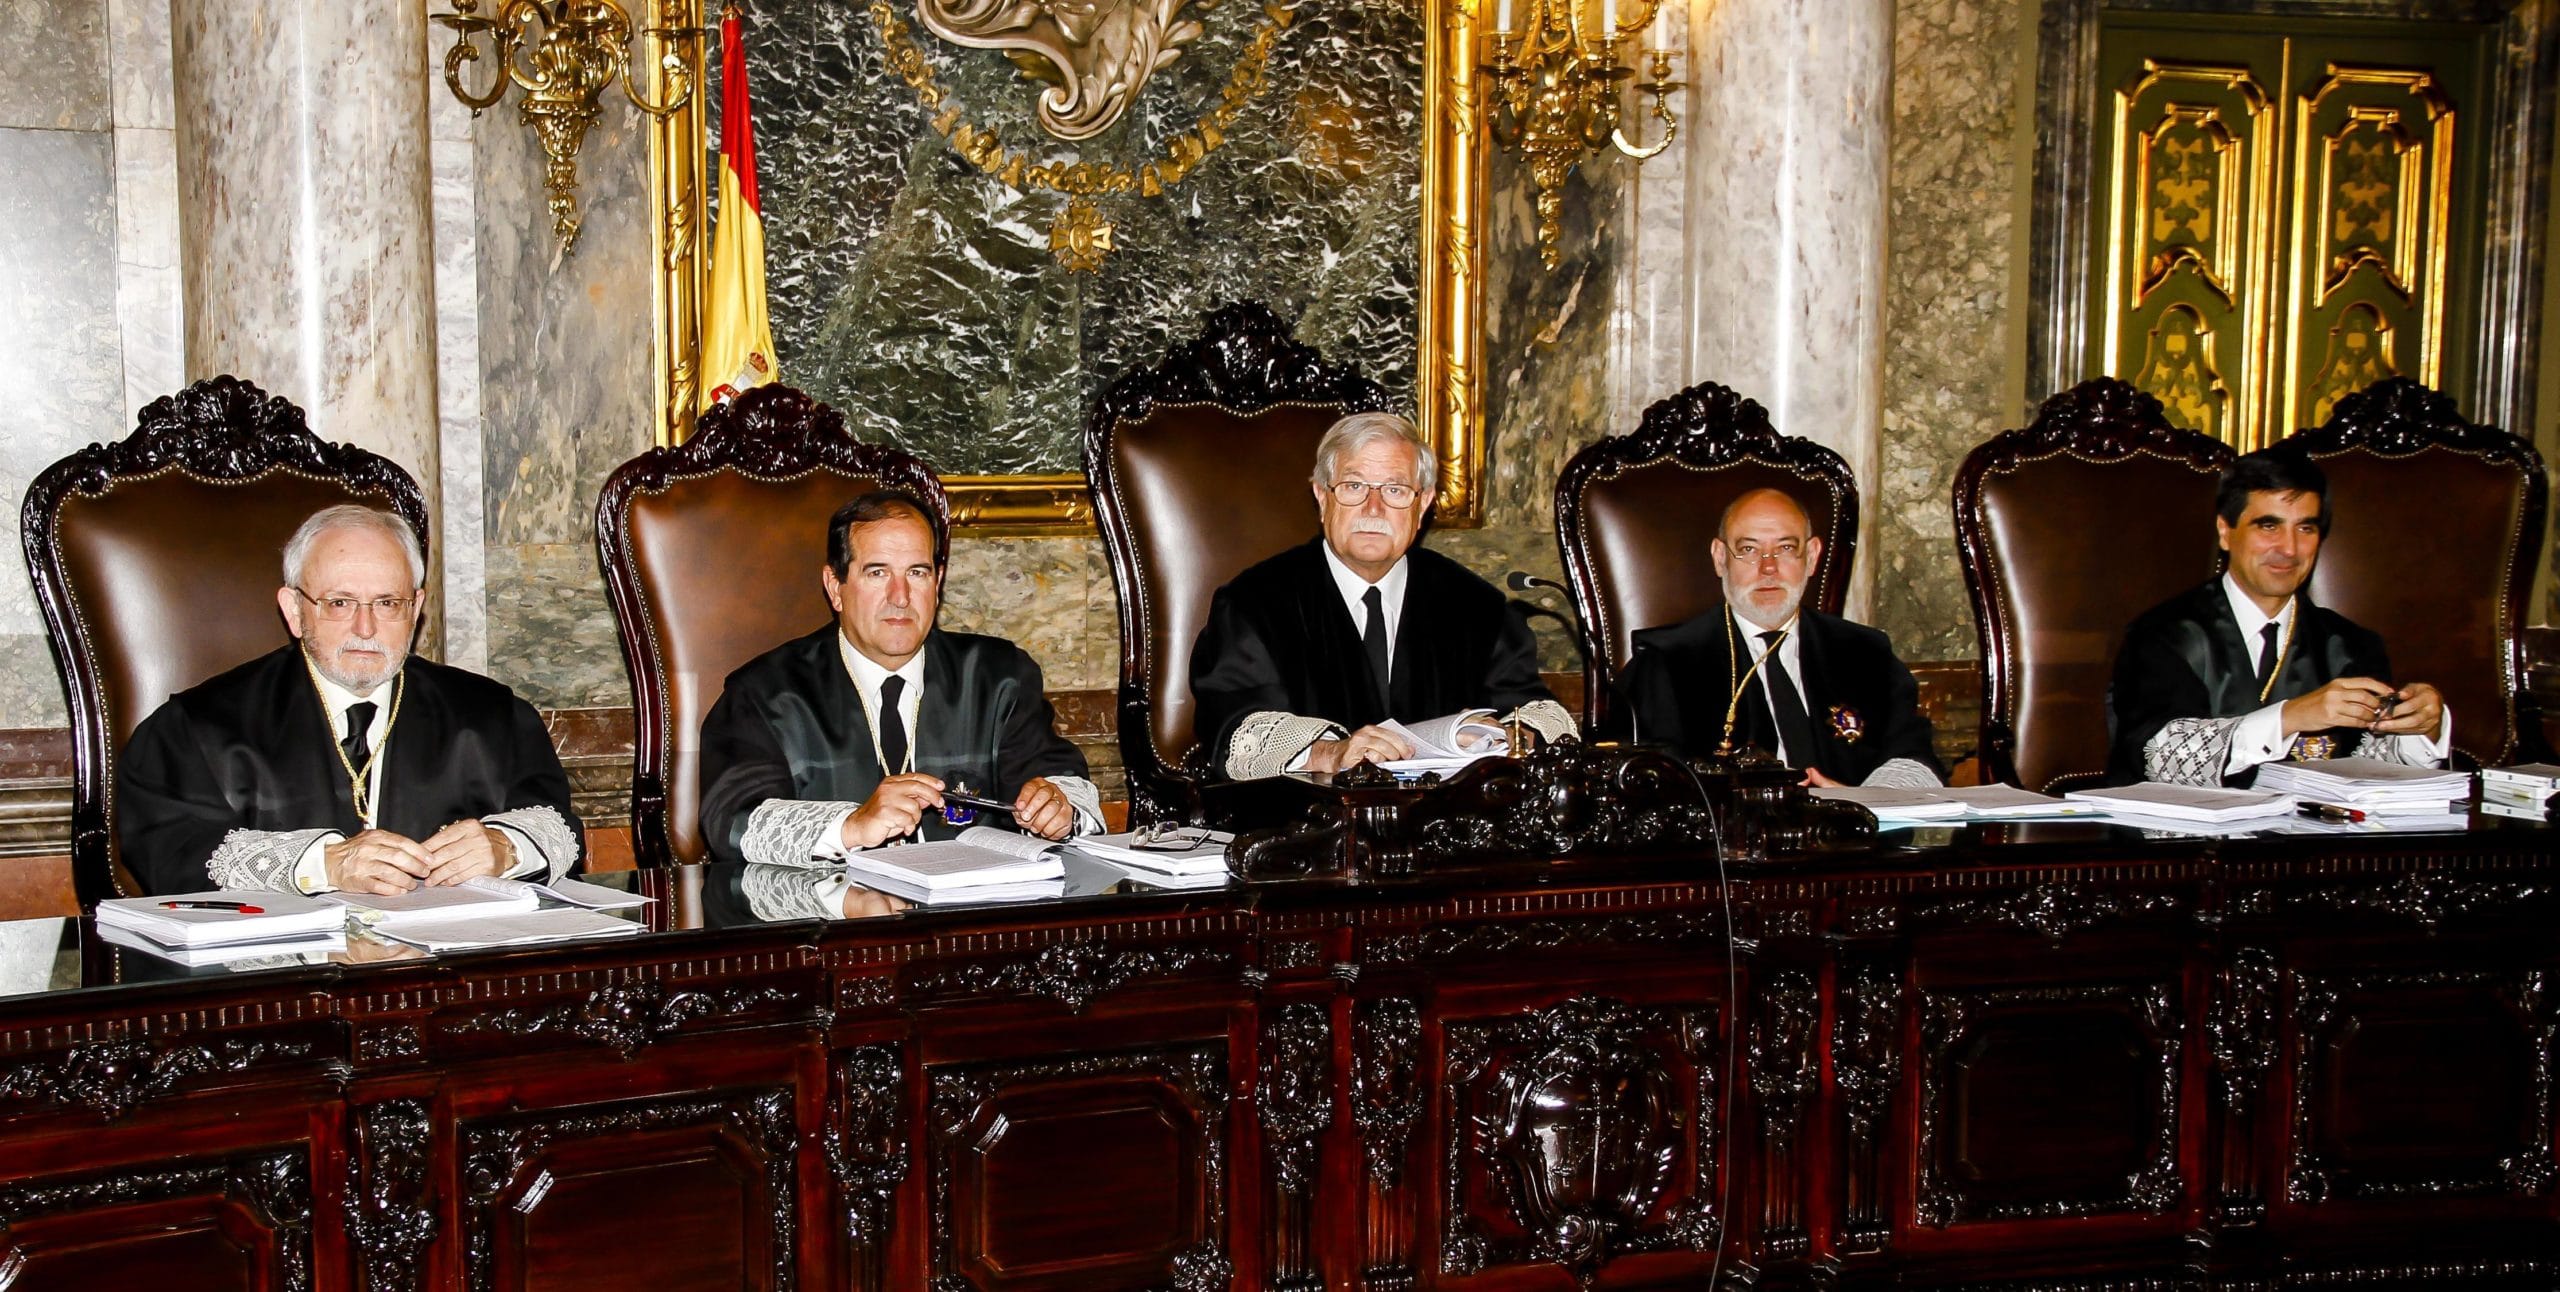 Los magistrados de la Sala de lo Penal del Tribunal Supremo (izquierda a derecha) Luciano Varela, Andrés Martínez Arrieta, Joaquín Giménez, José Manuel Maza y Antonio del Moral.